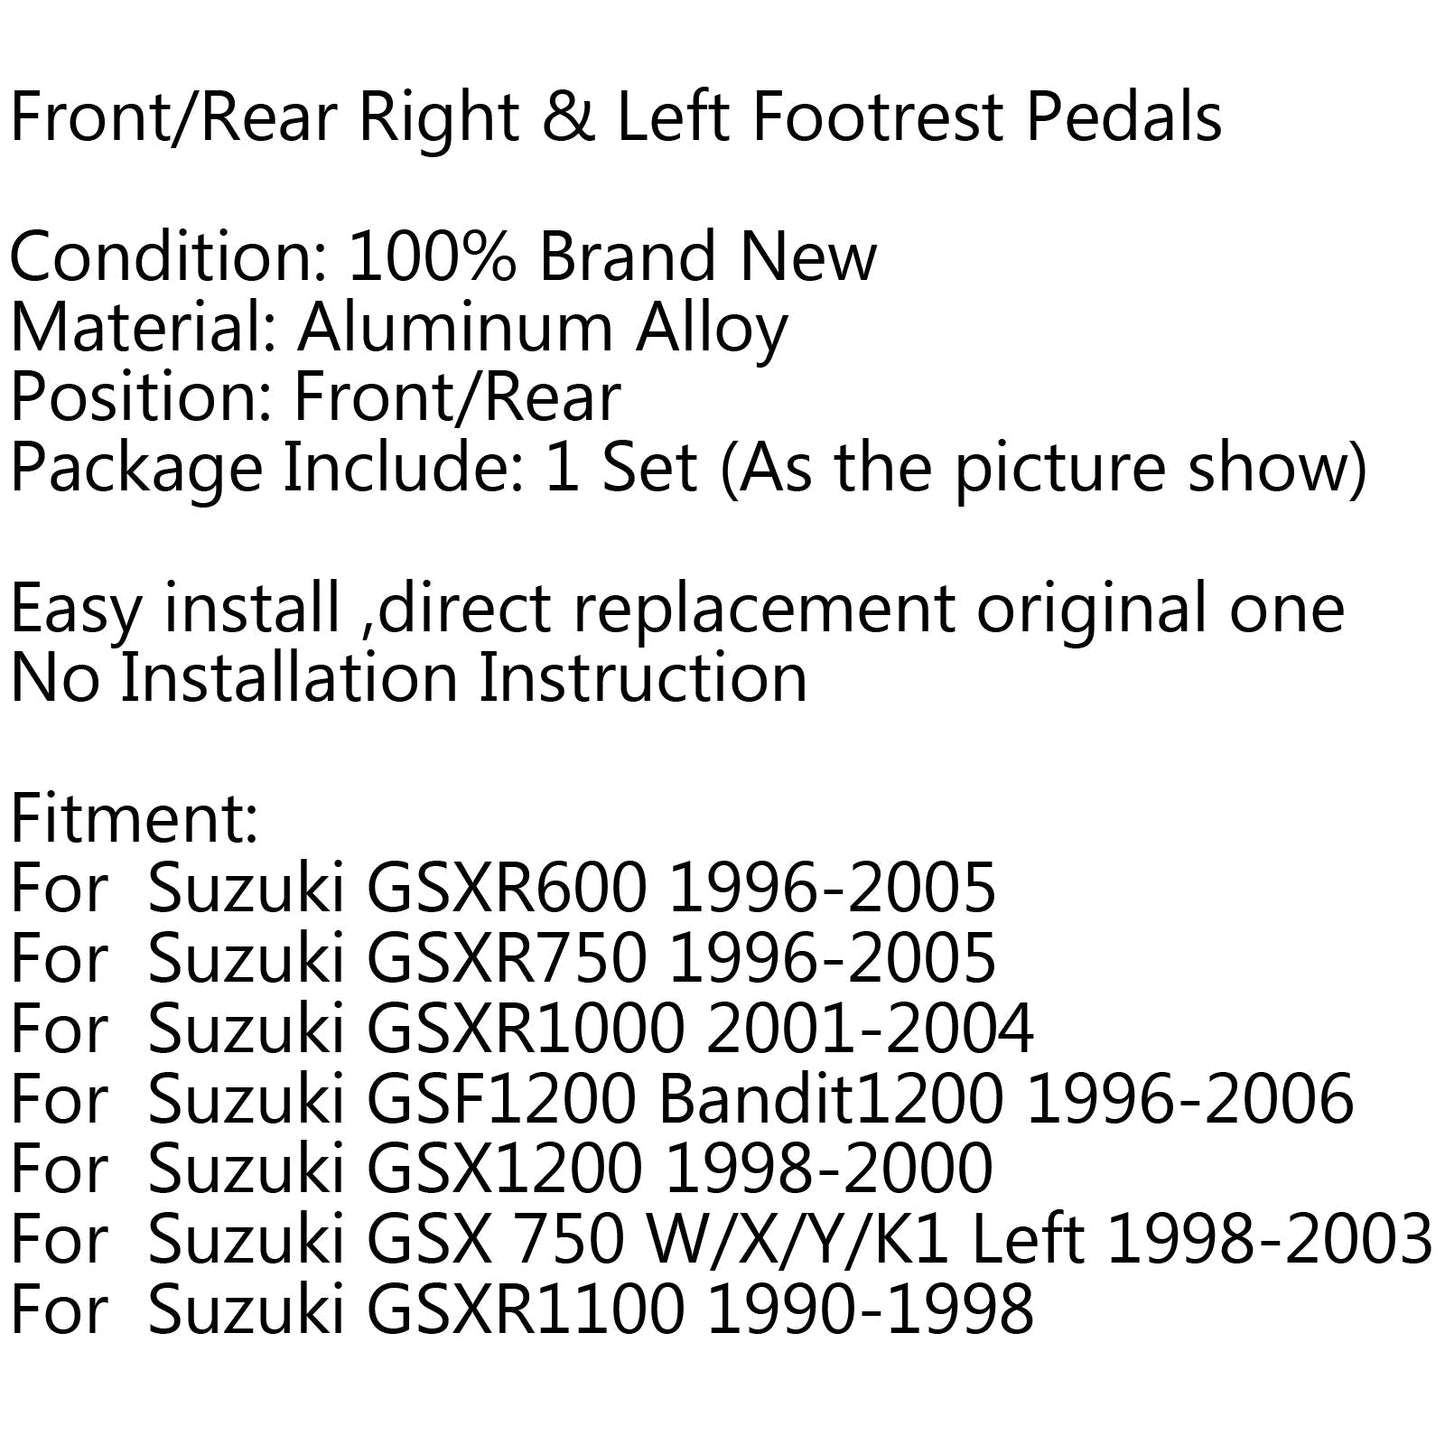 F/R Poggiapiedi Pedali Pedane Per Suzuki GSXR600 GSX-R GSX 750 1000 GSF600 Generico